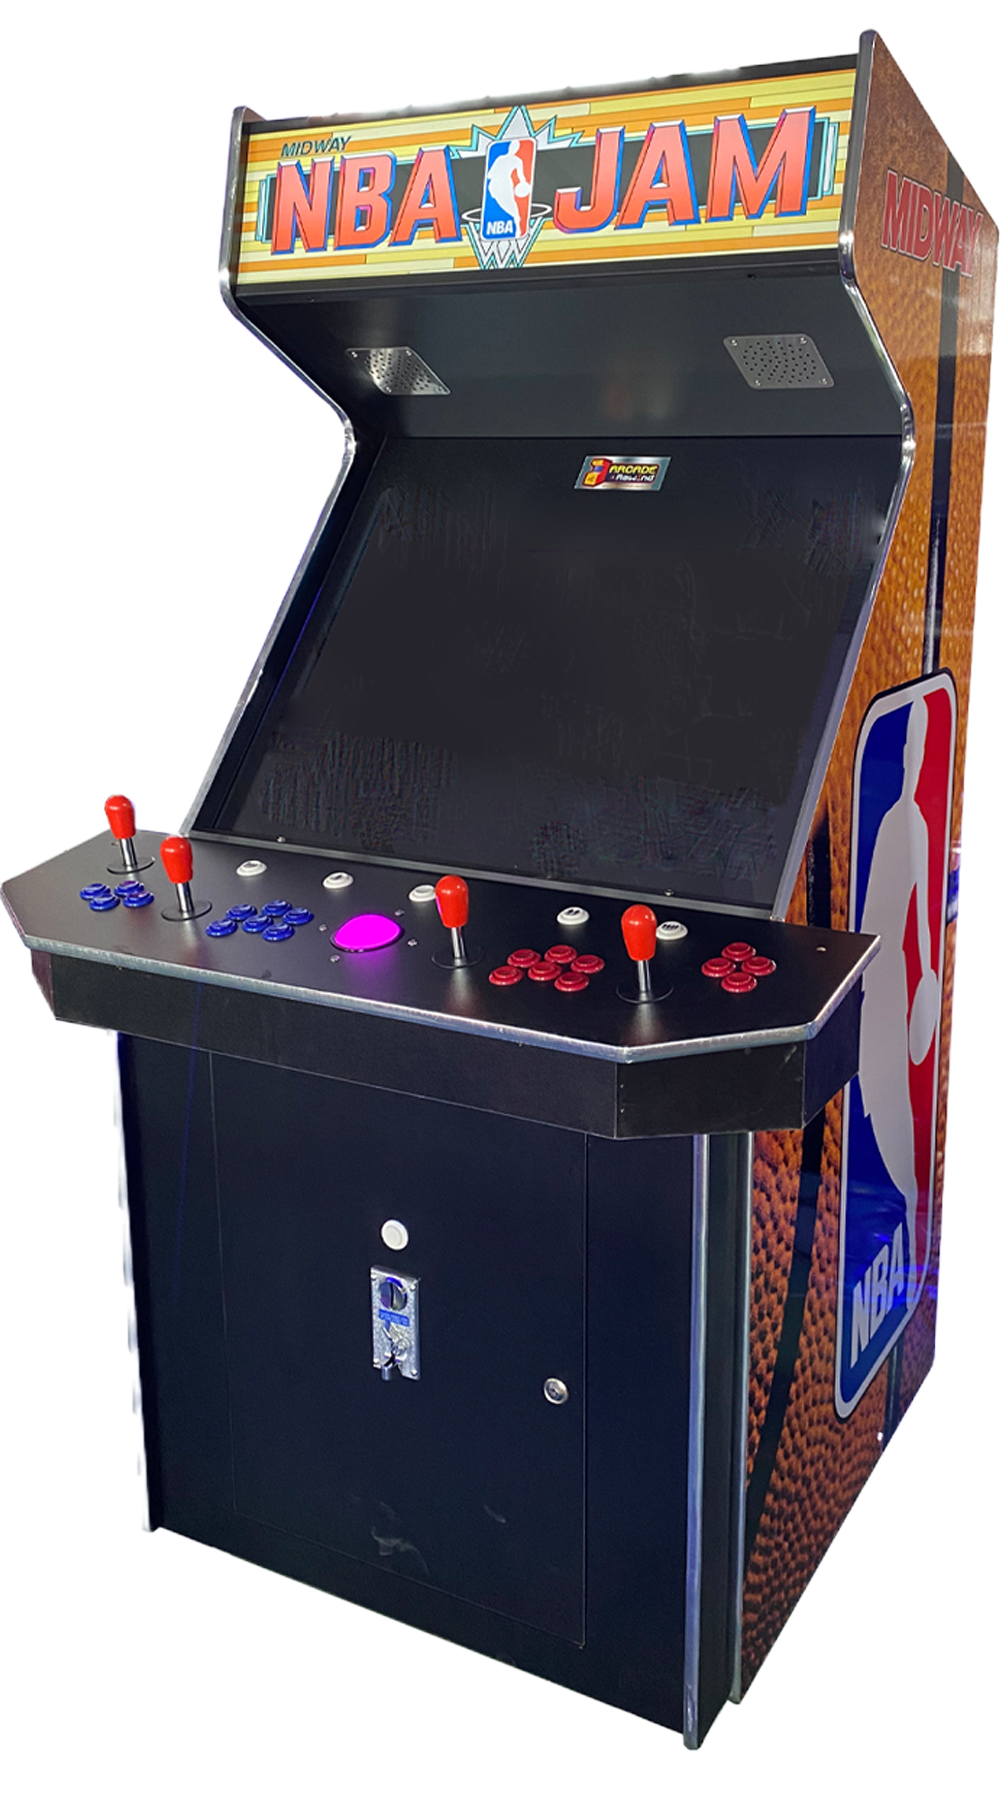 Arcade Rewind NBA JAM Arcade Machine 4 player for sale